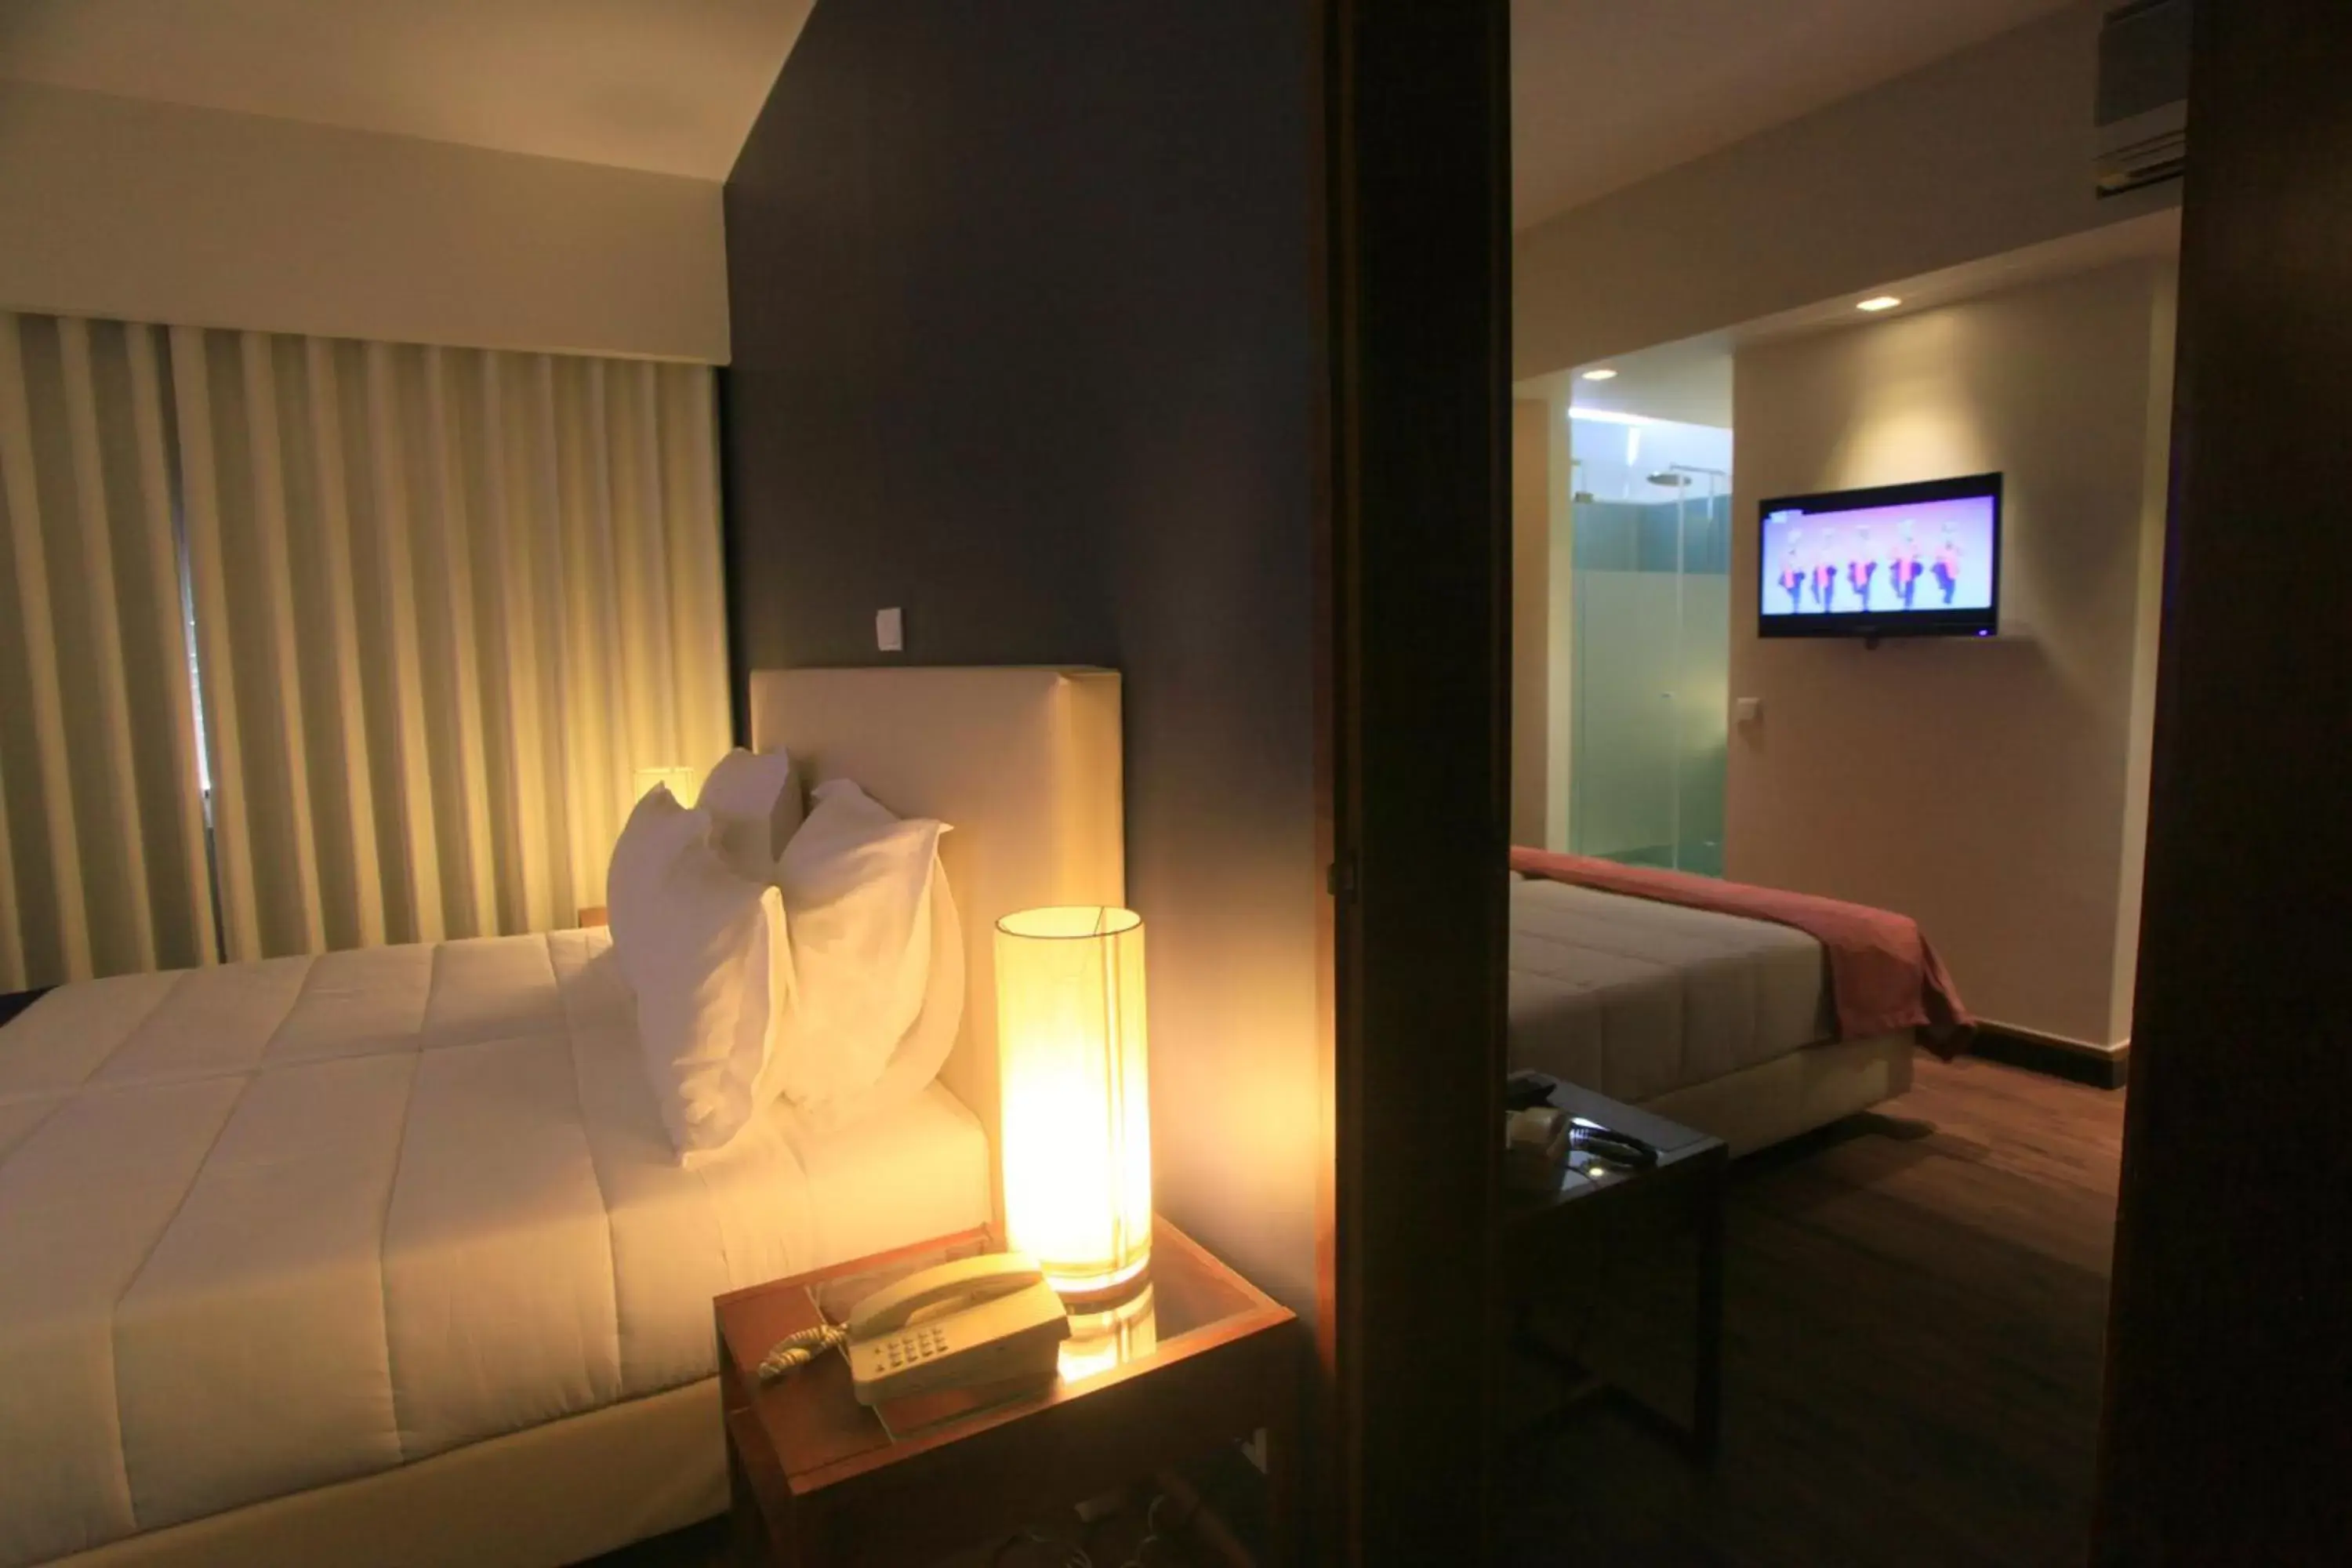 Bed in Hotel Rali Viana